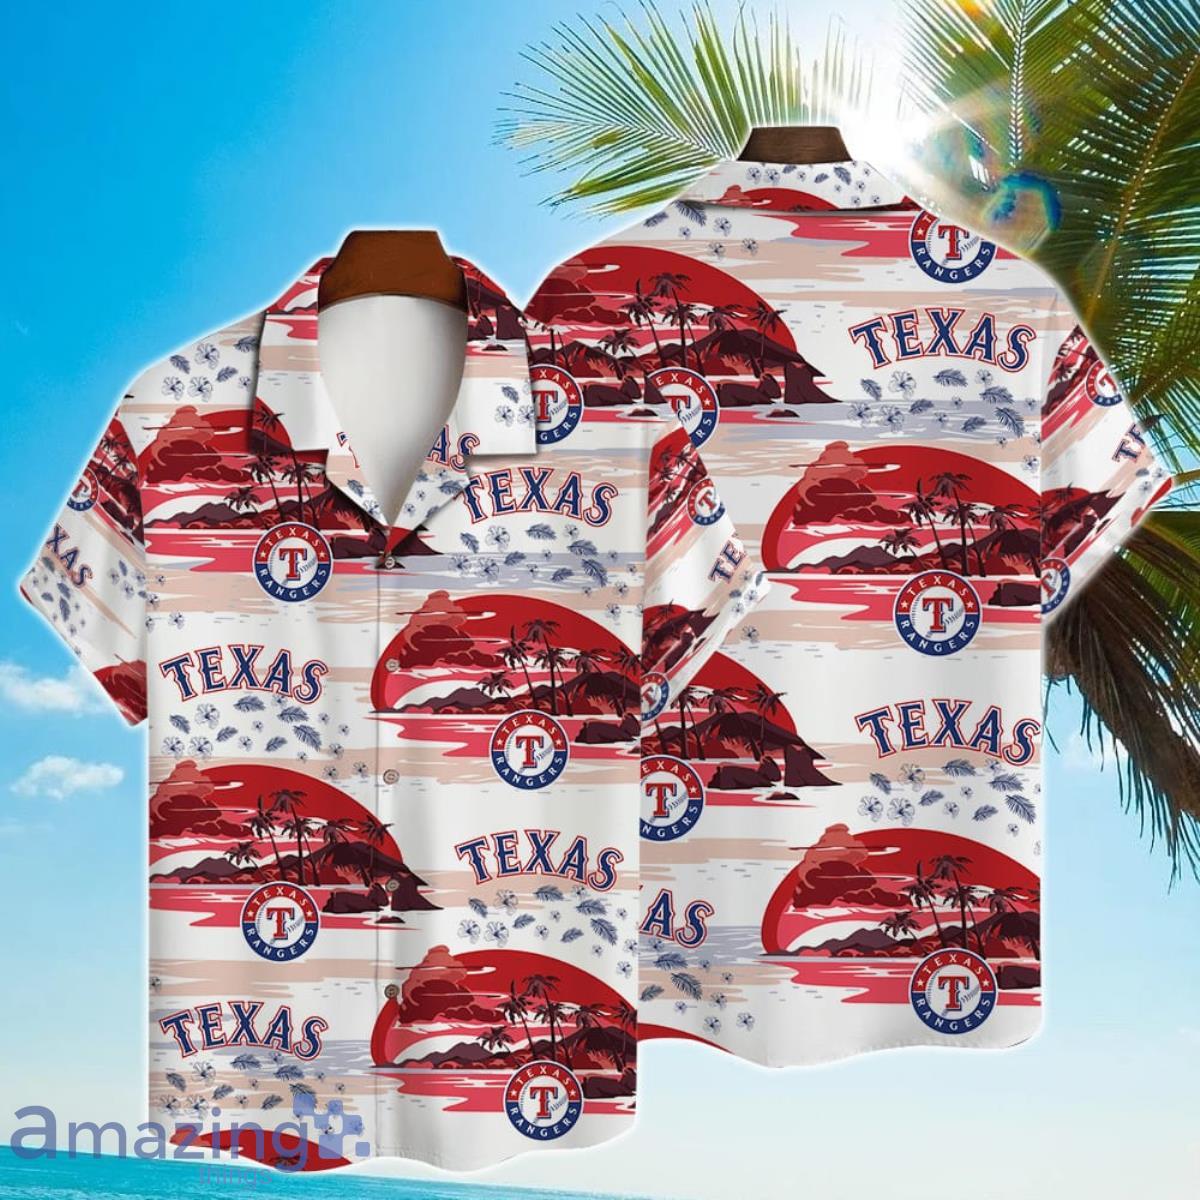 Texas Rangers Major League Baseball 2023 Hawaiian Shirt - Freedomdesign